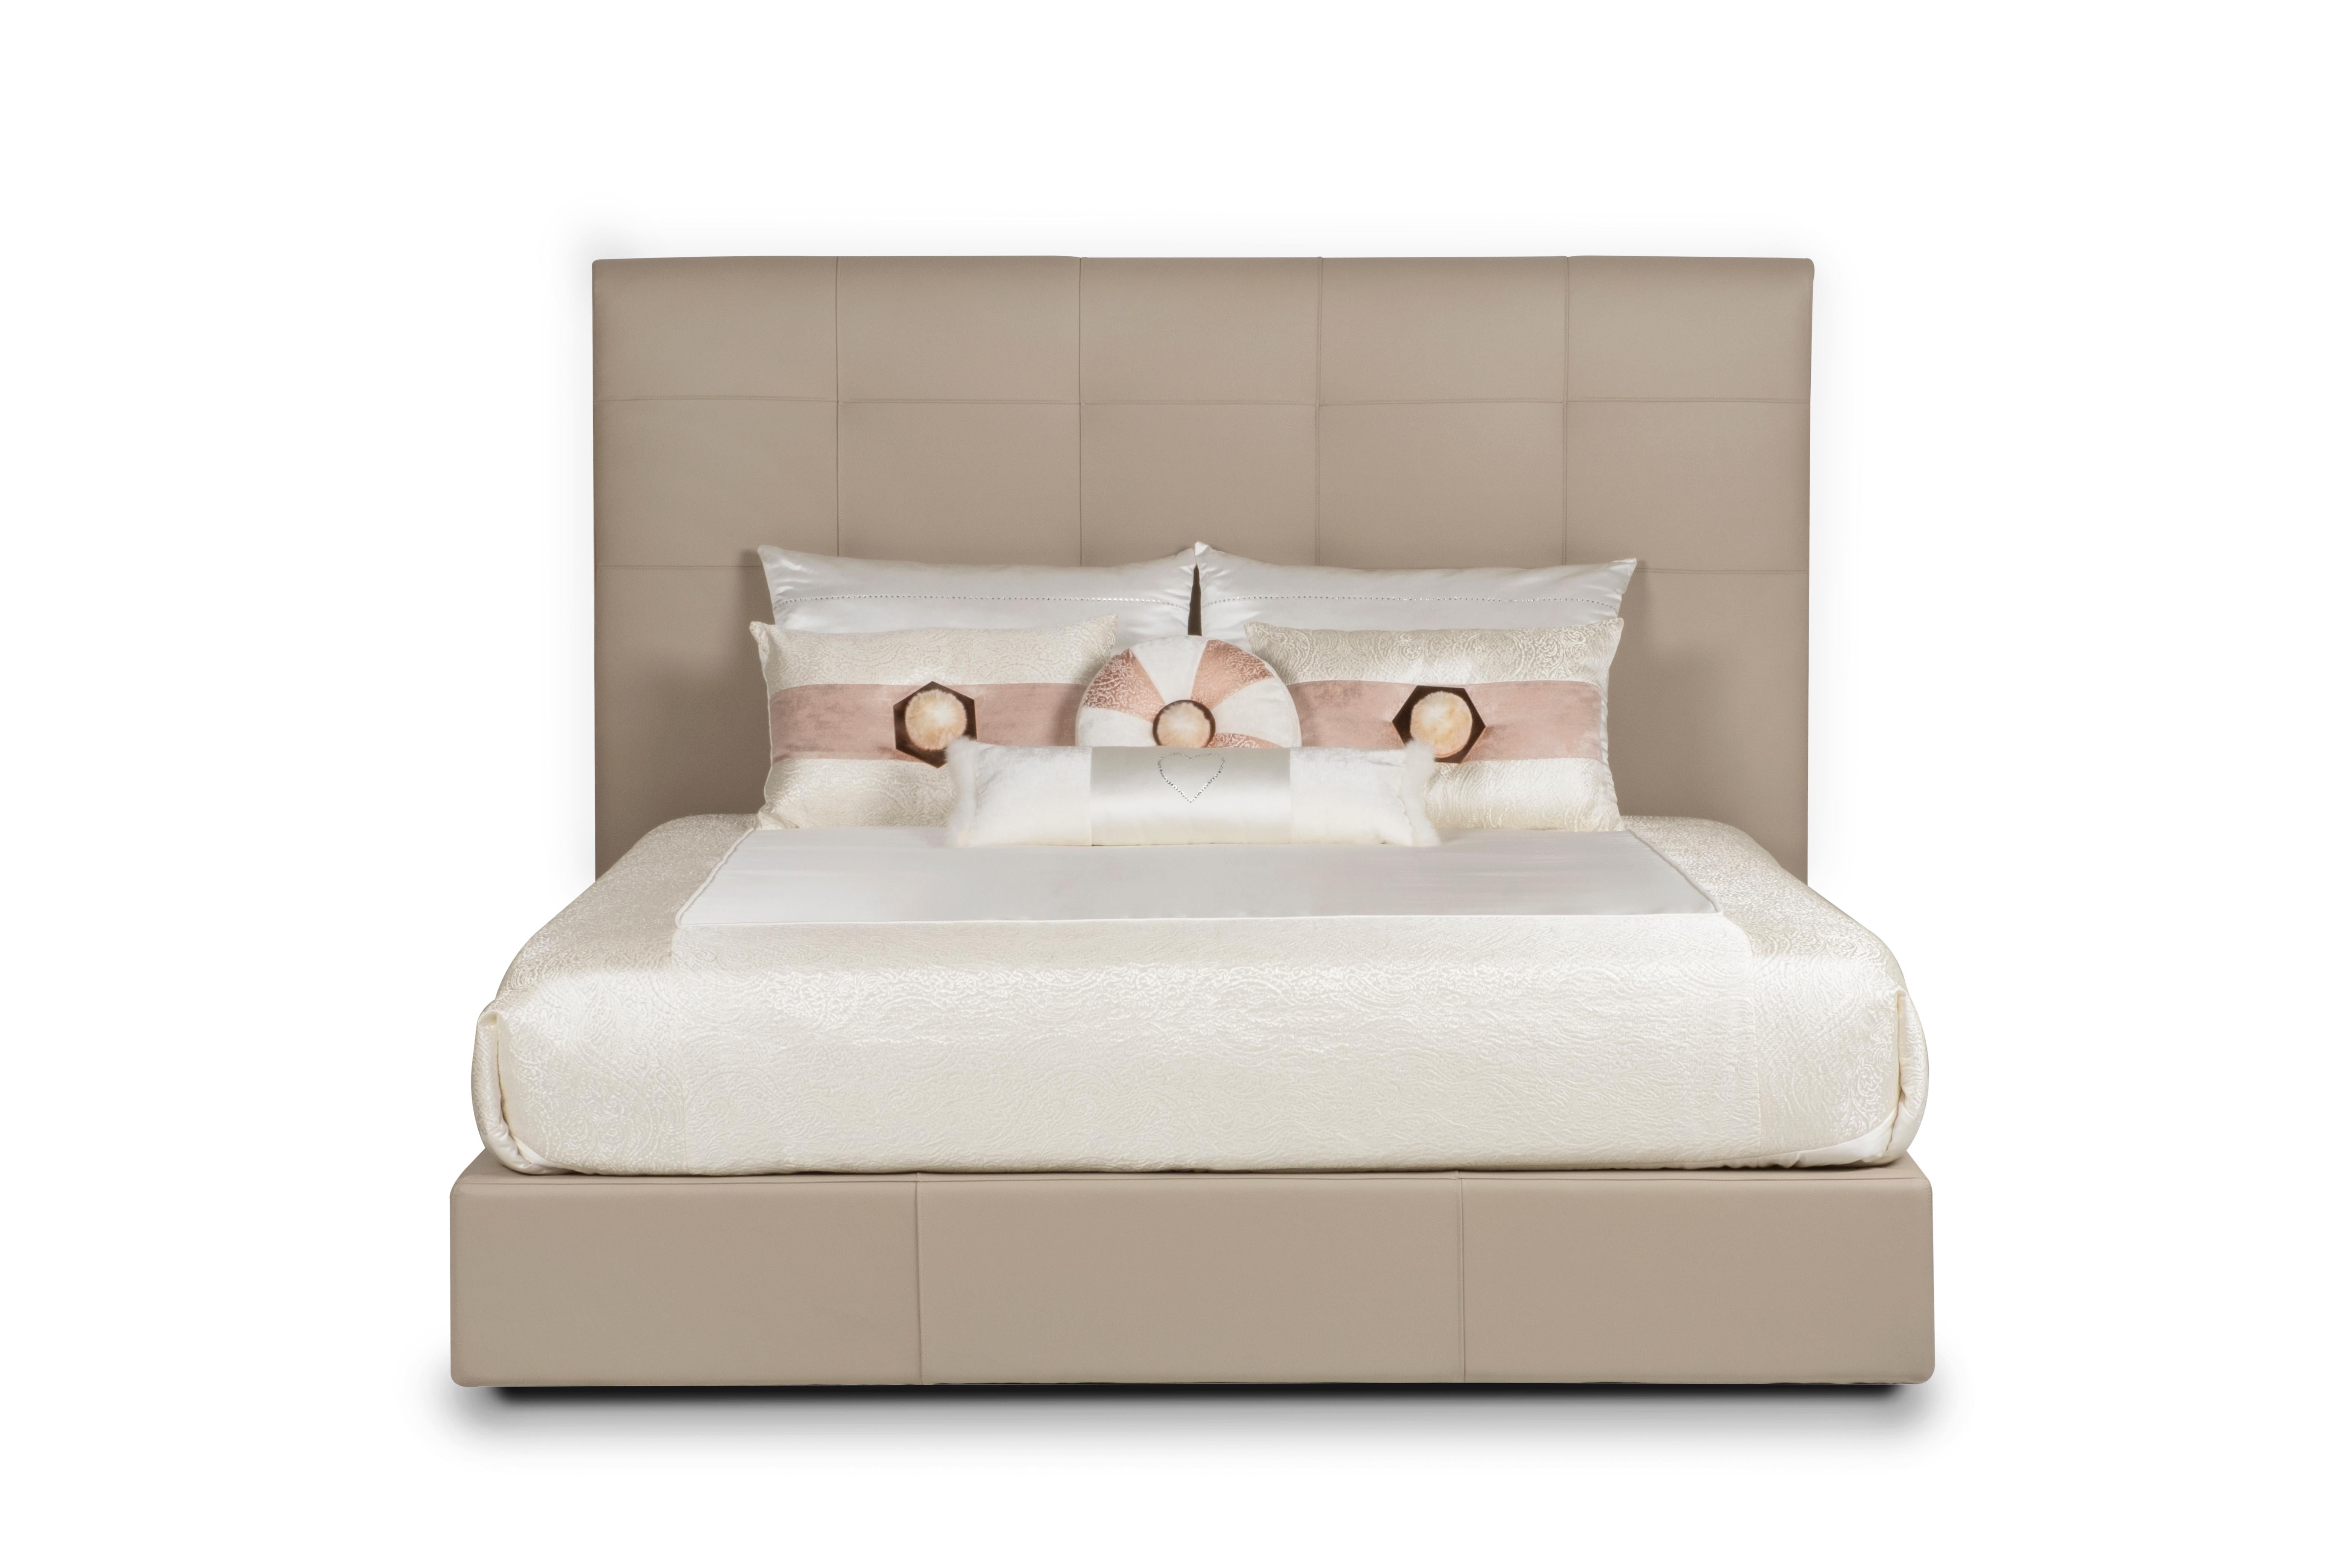 Midnight Bed, Modern Collection'S, handgefertigt in Portugal - Europa von GF Modern.

Midnight ist ein elegantes Bett, gepolstert mit beigem, hochwertigem italienischem Leder. Es wurde entworfen, um modernen Komfort mit eleganten Details zu